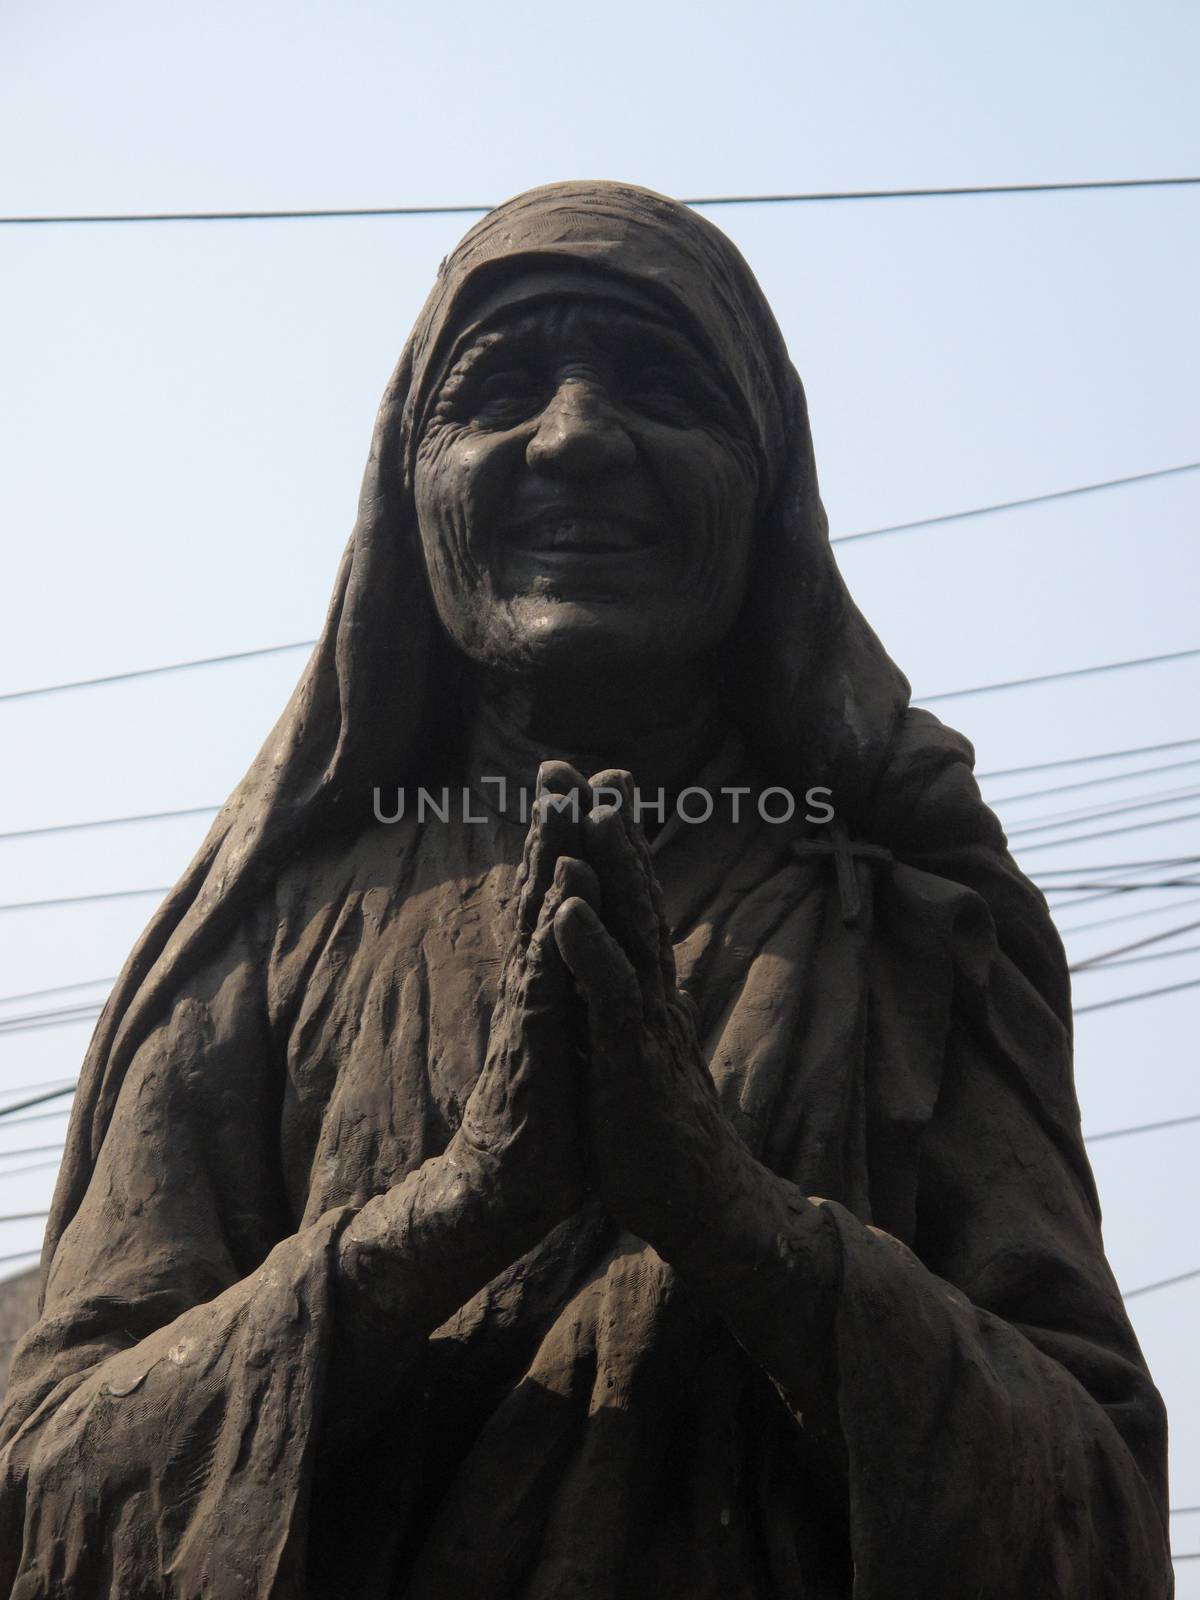 Mother Teresa monument in Kolkata, West Bengal, India